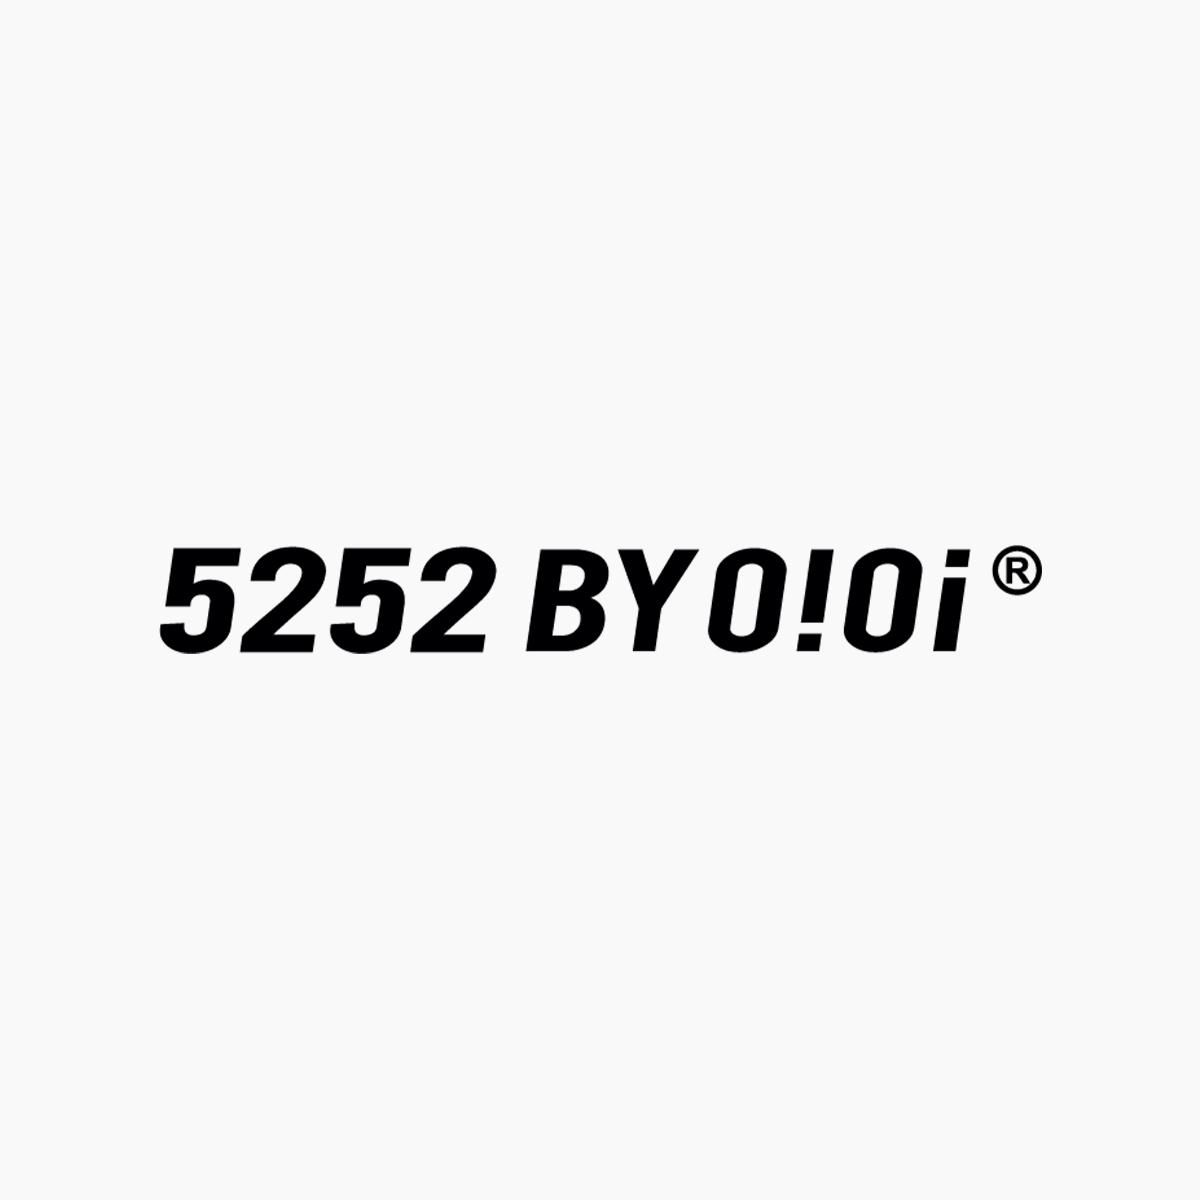 5252 BY O!Oi